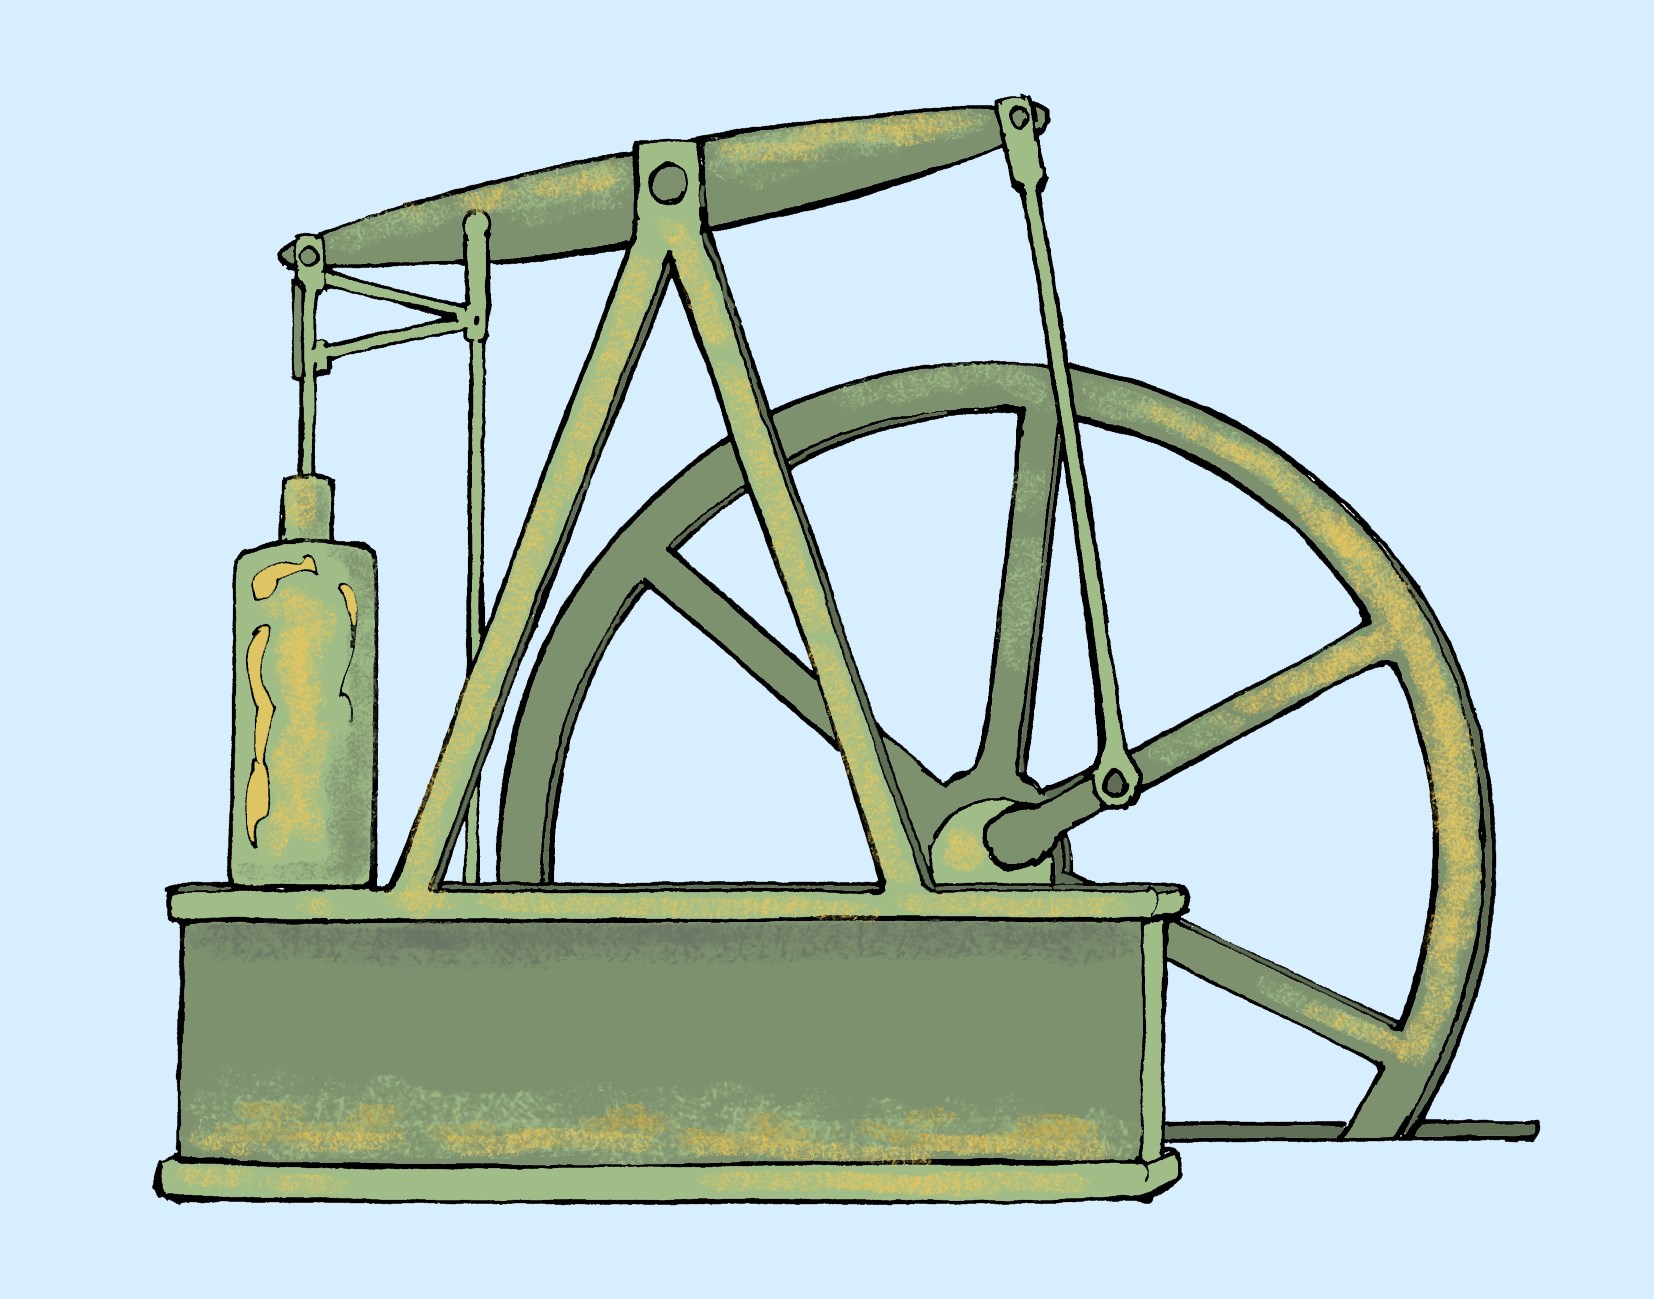 Ångmaskinen Den allra viktigaste uppfinningen under 1700-talet var ångmaskinen. Den uppfanns av en skotte från Glasgow, som hette James Watt.